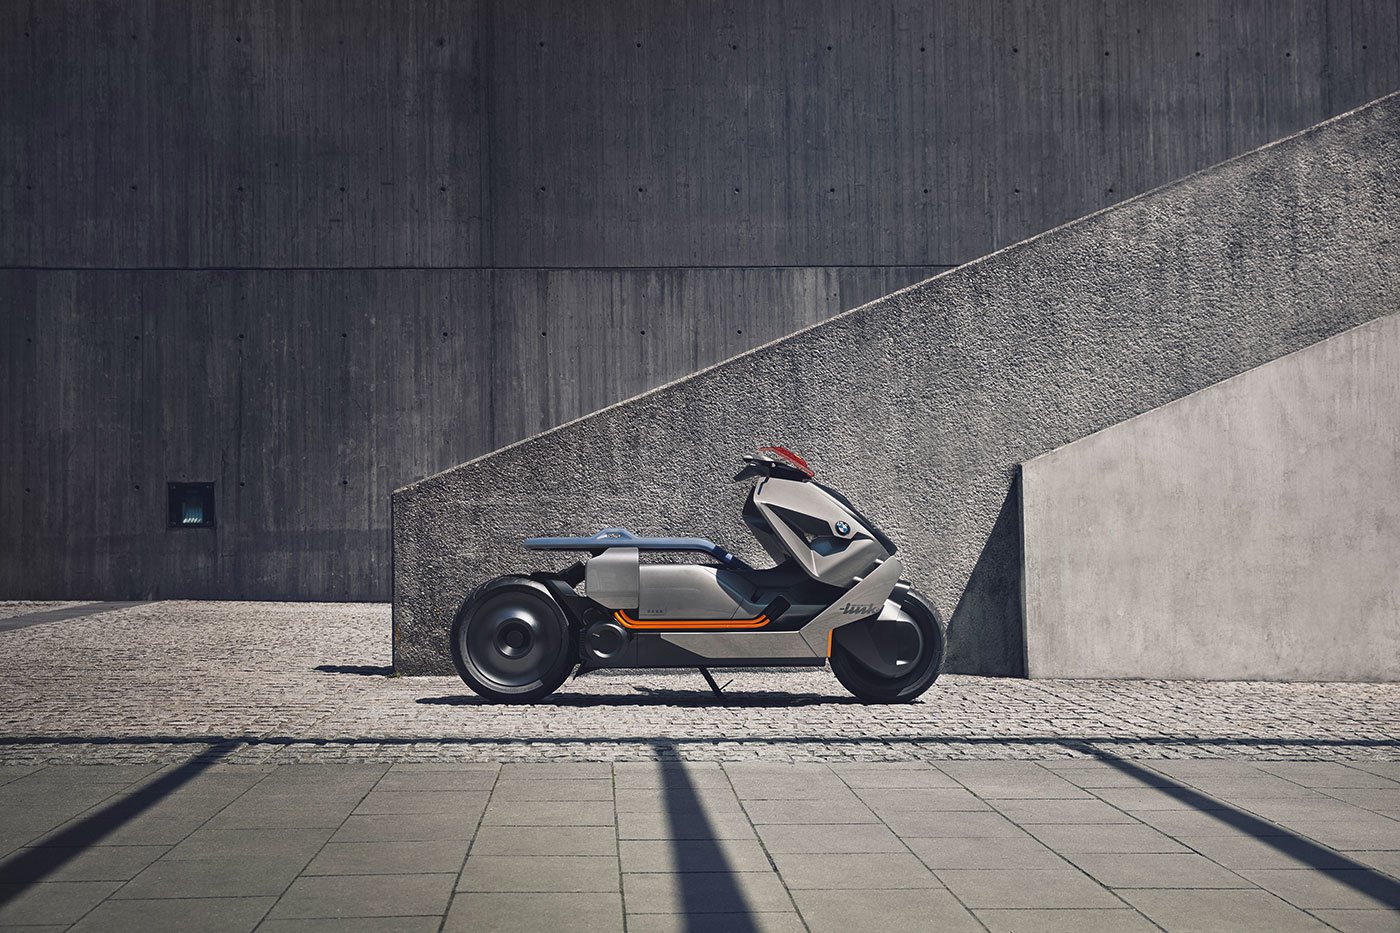 imagen 2 de BMW Motorrad Concept Link: el futuro de las motos urbanas. So cool.